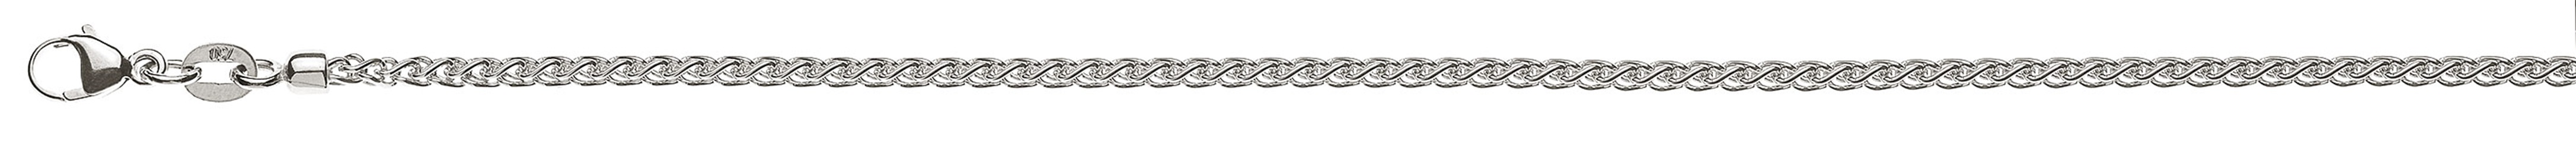 AURONOS Prestige Halskette Weissgold 18K Zopfkette 50cm 2.15mm